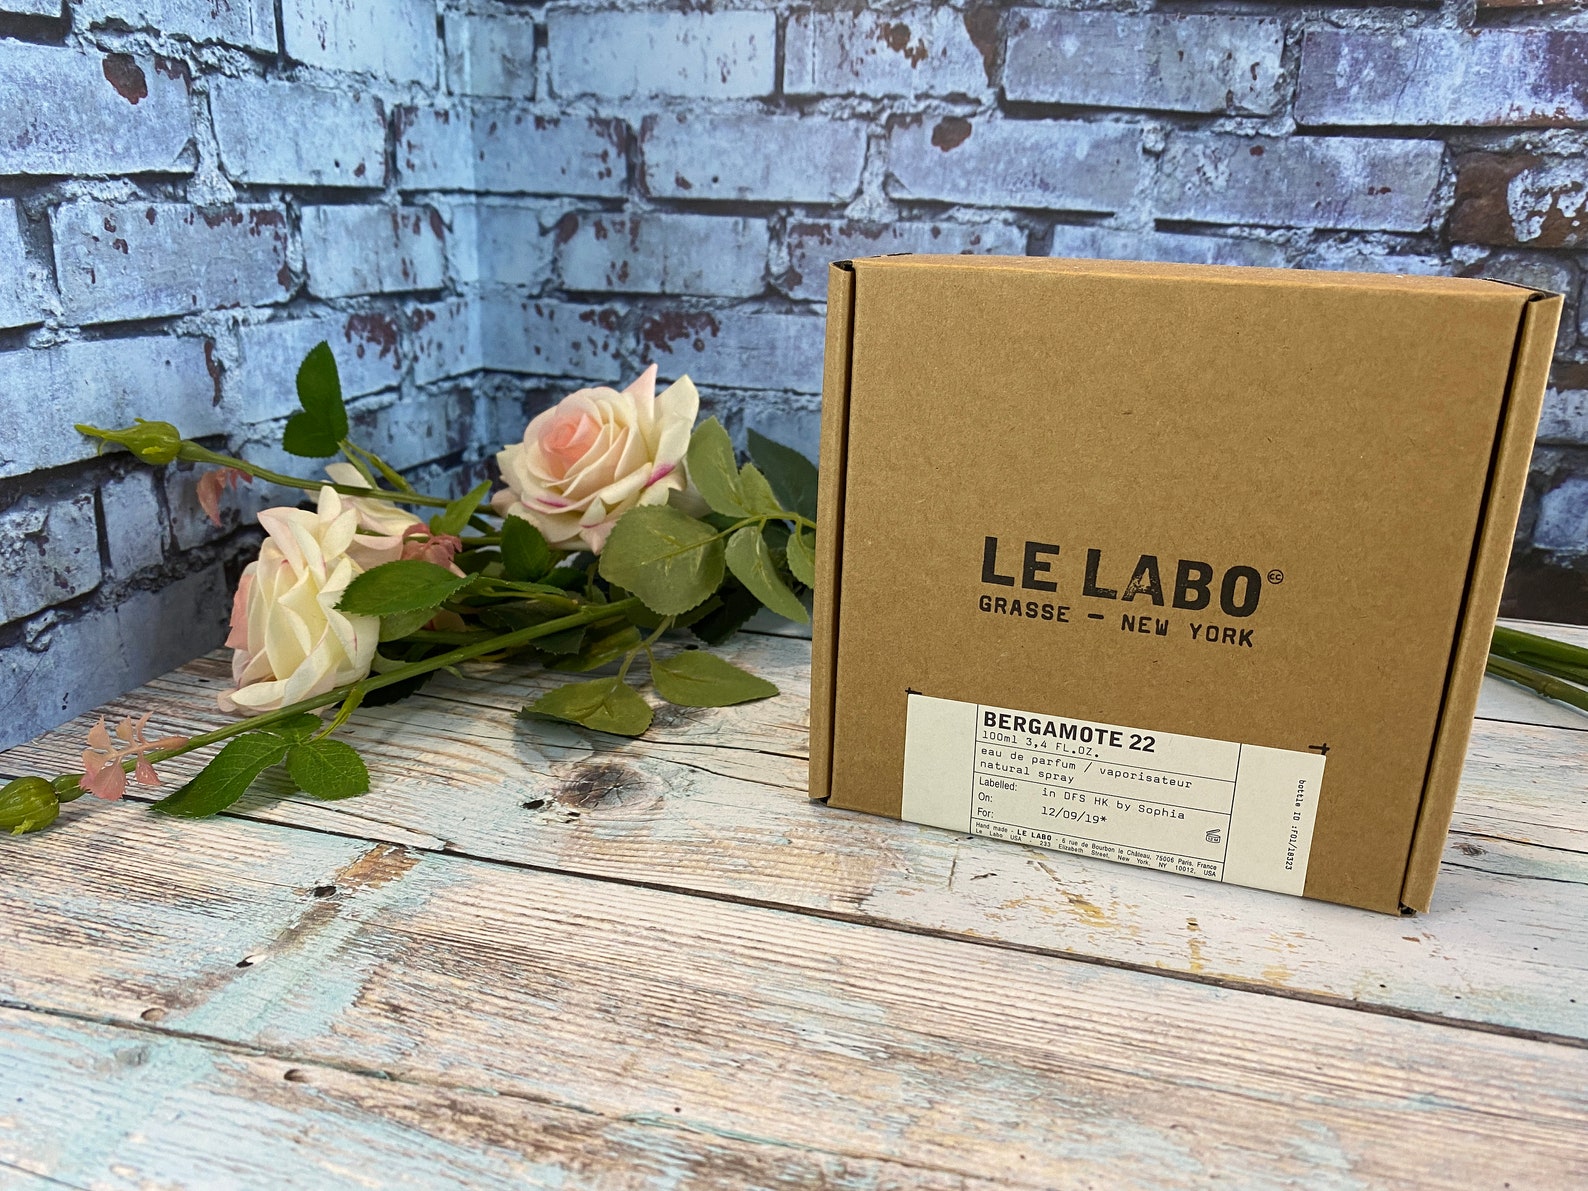 Le Labo Bergamote 22 3.4 Fl.oz 100 Ml Unisex Eau De Parfum New | Etsy